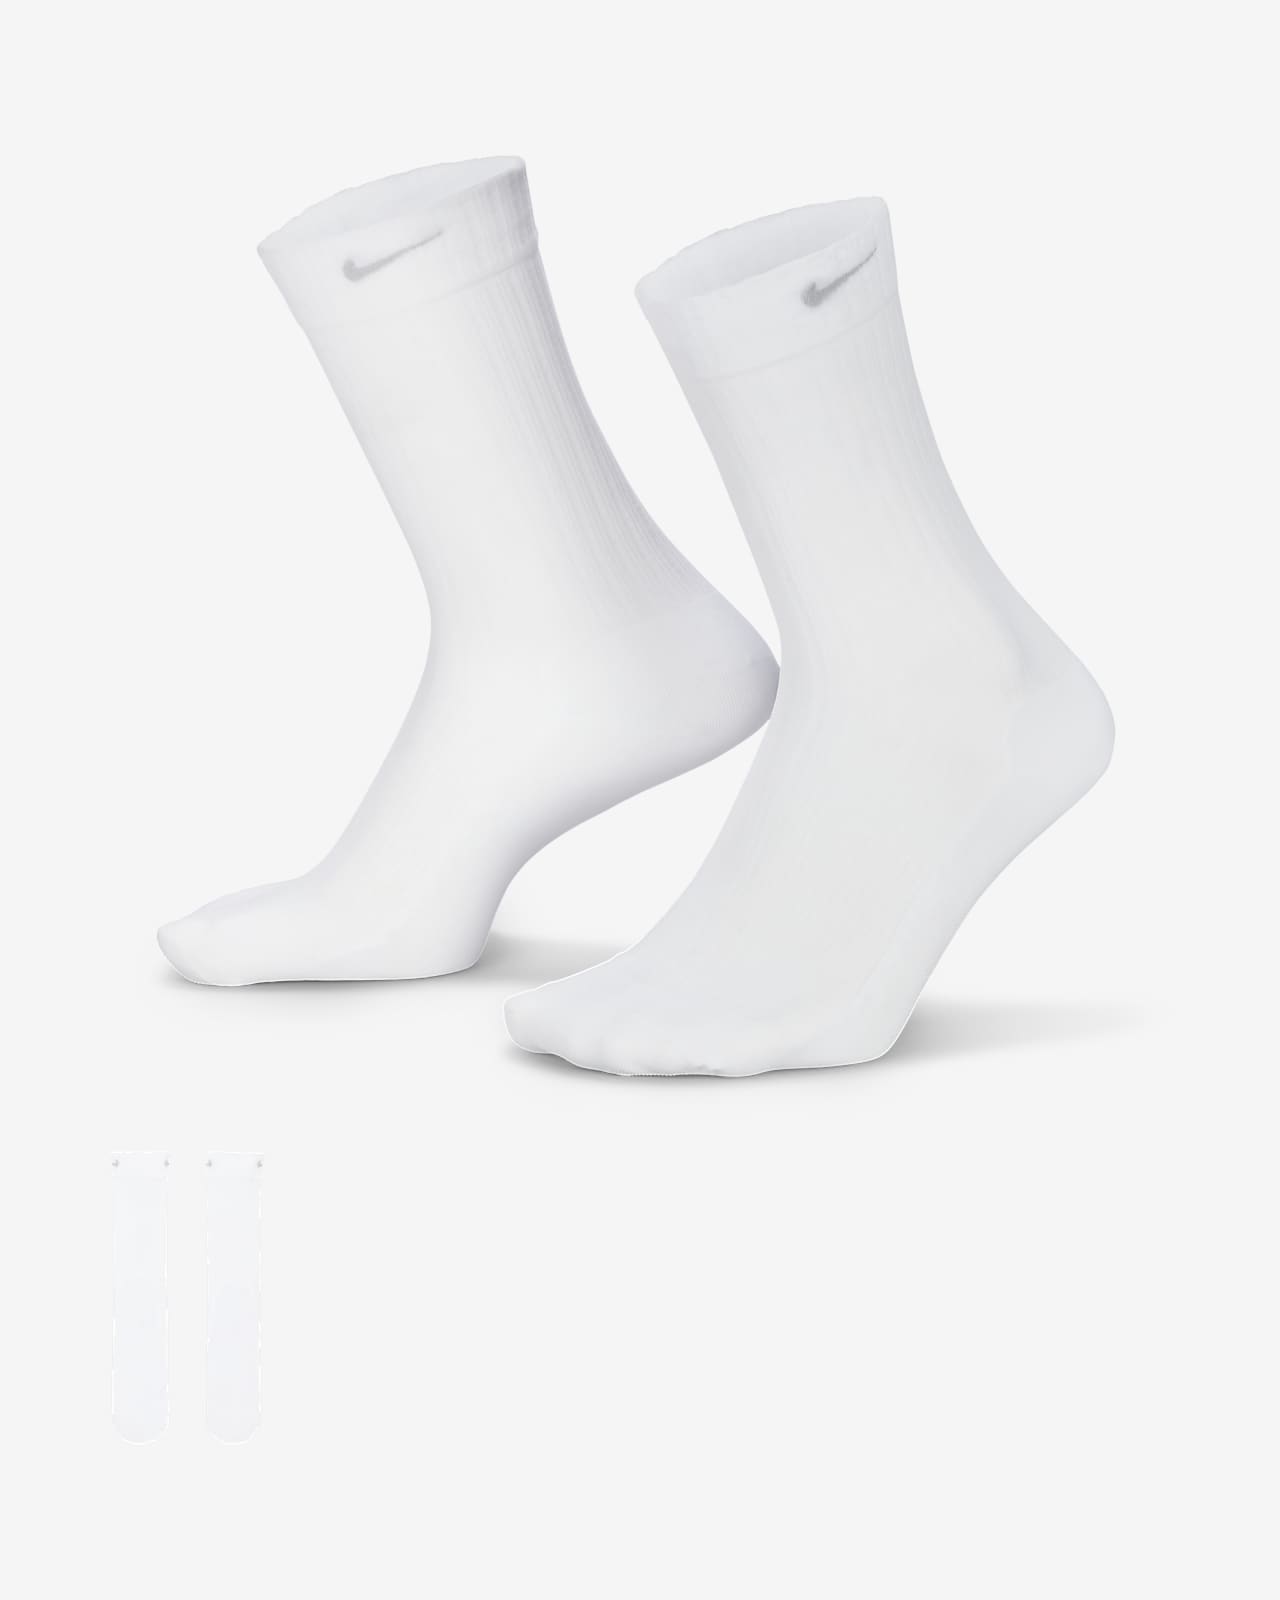 Γυναικείες διάφανες κάλτσες μεσαίου ύψους Nike (ένα ζευγάρι)